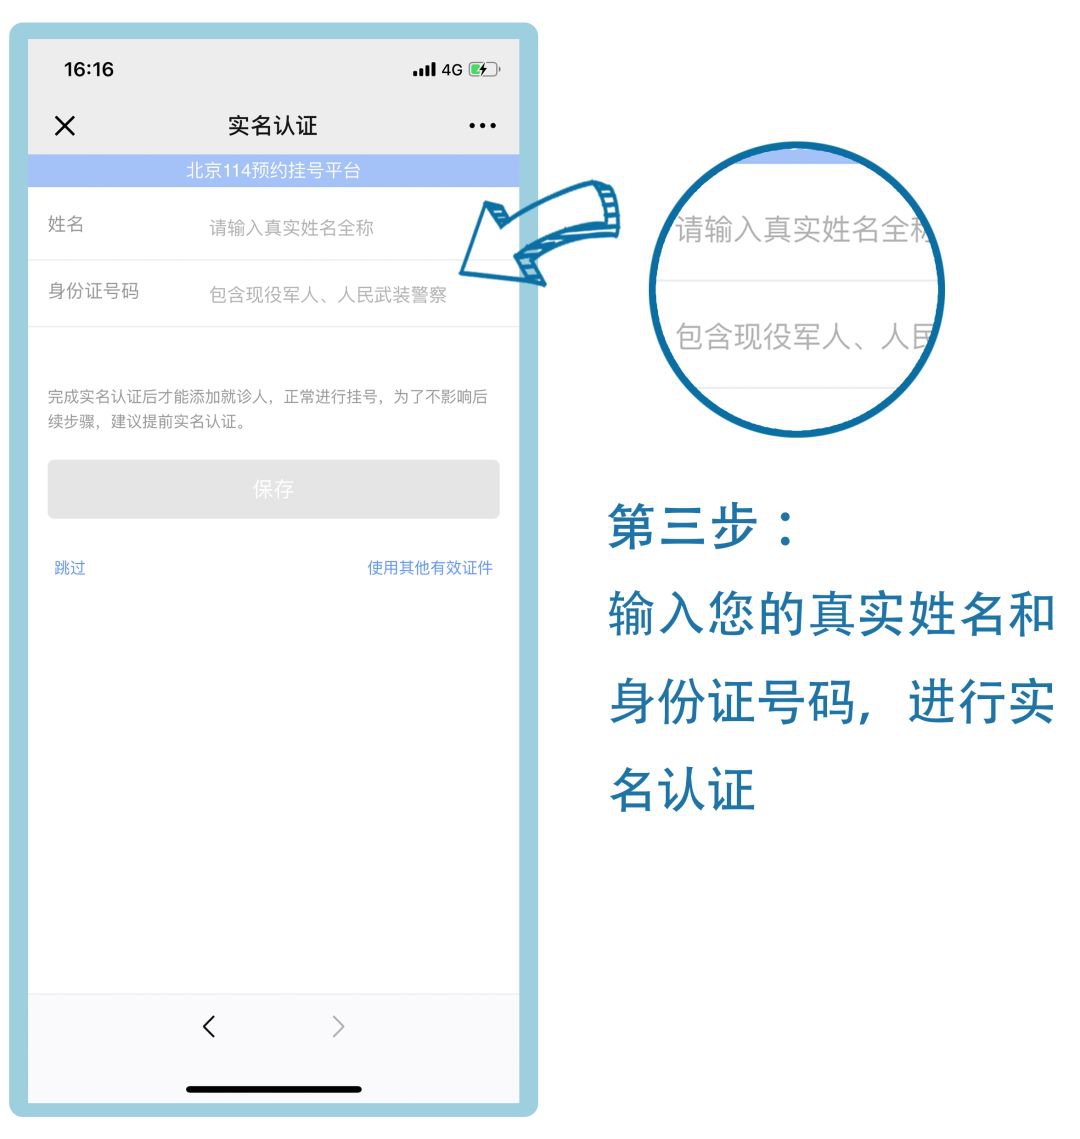 北京114预约挂号入口(官网版 微信端 电话预约)